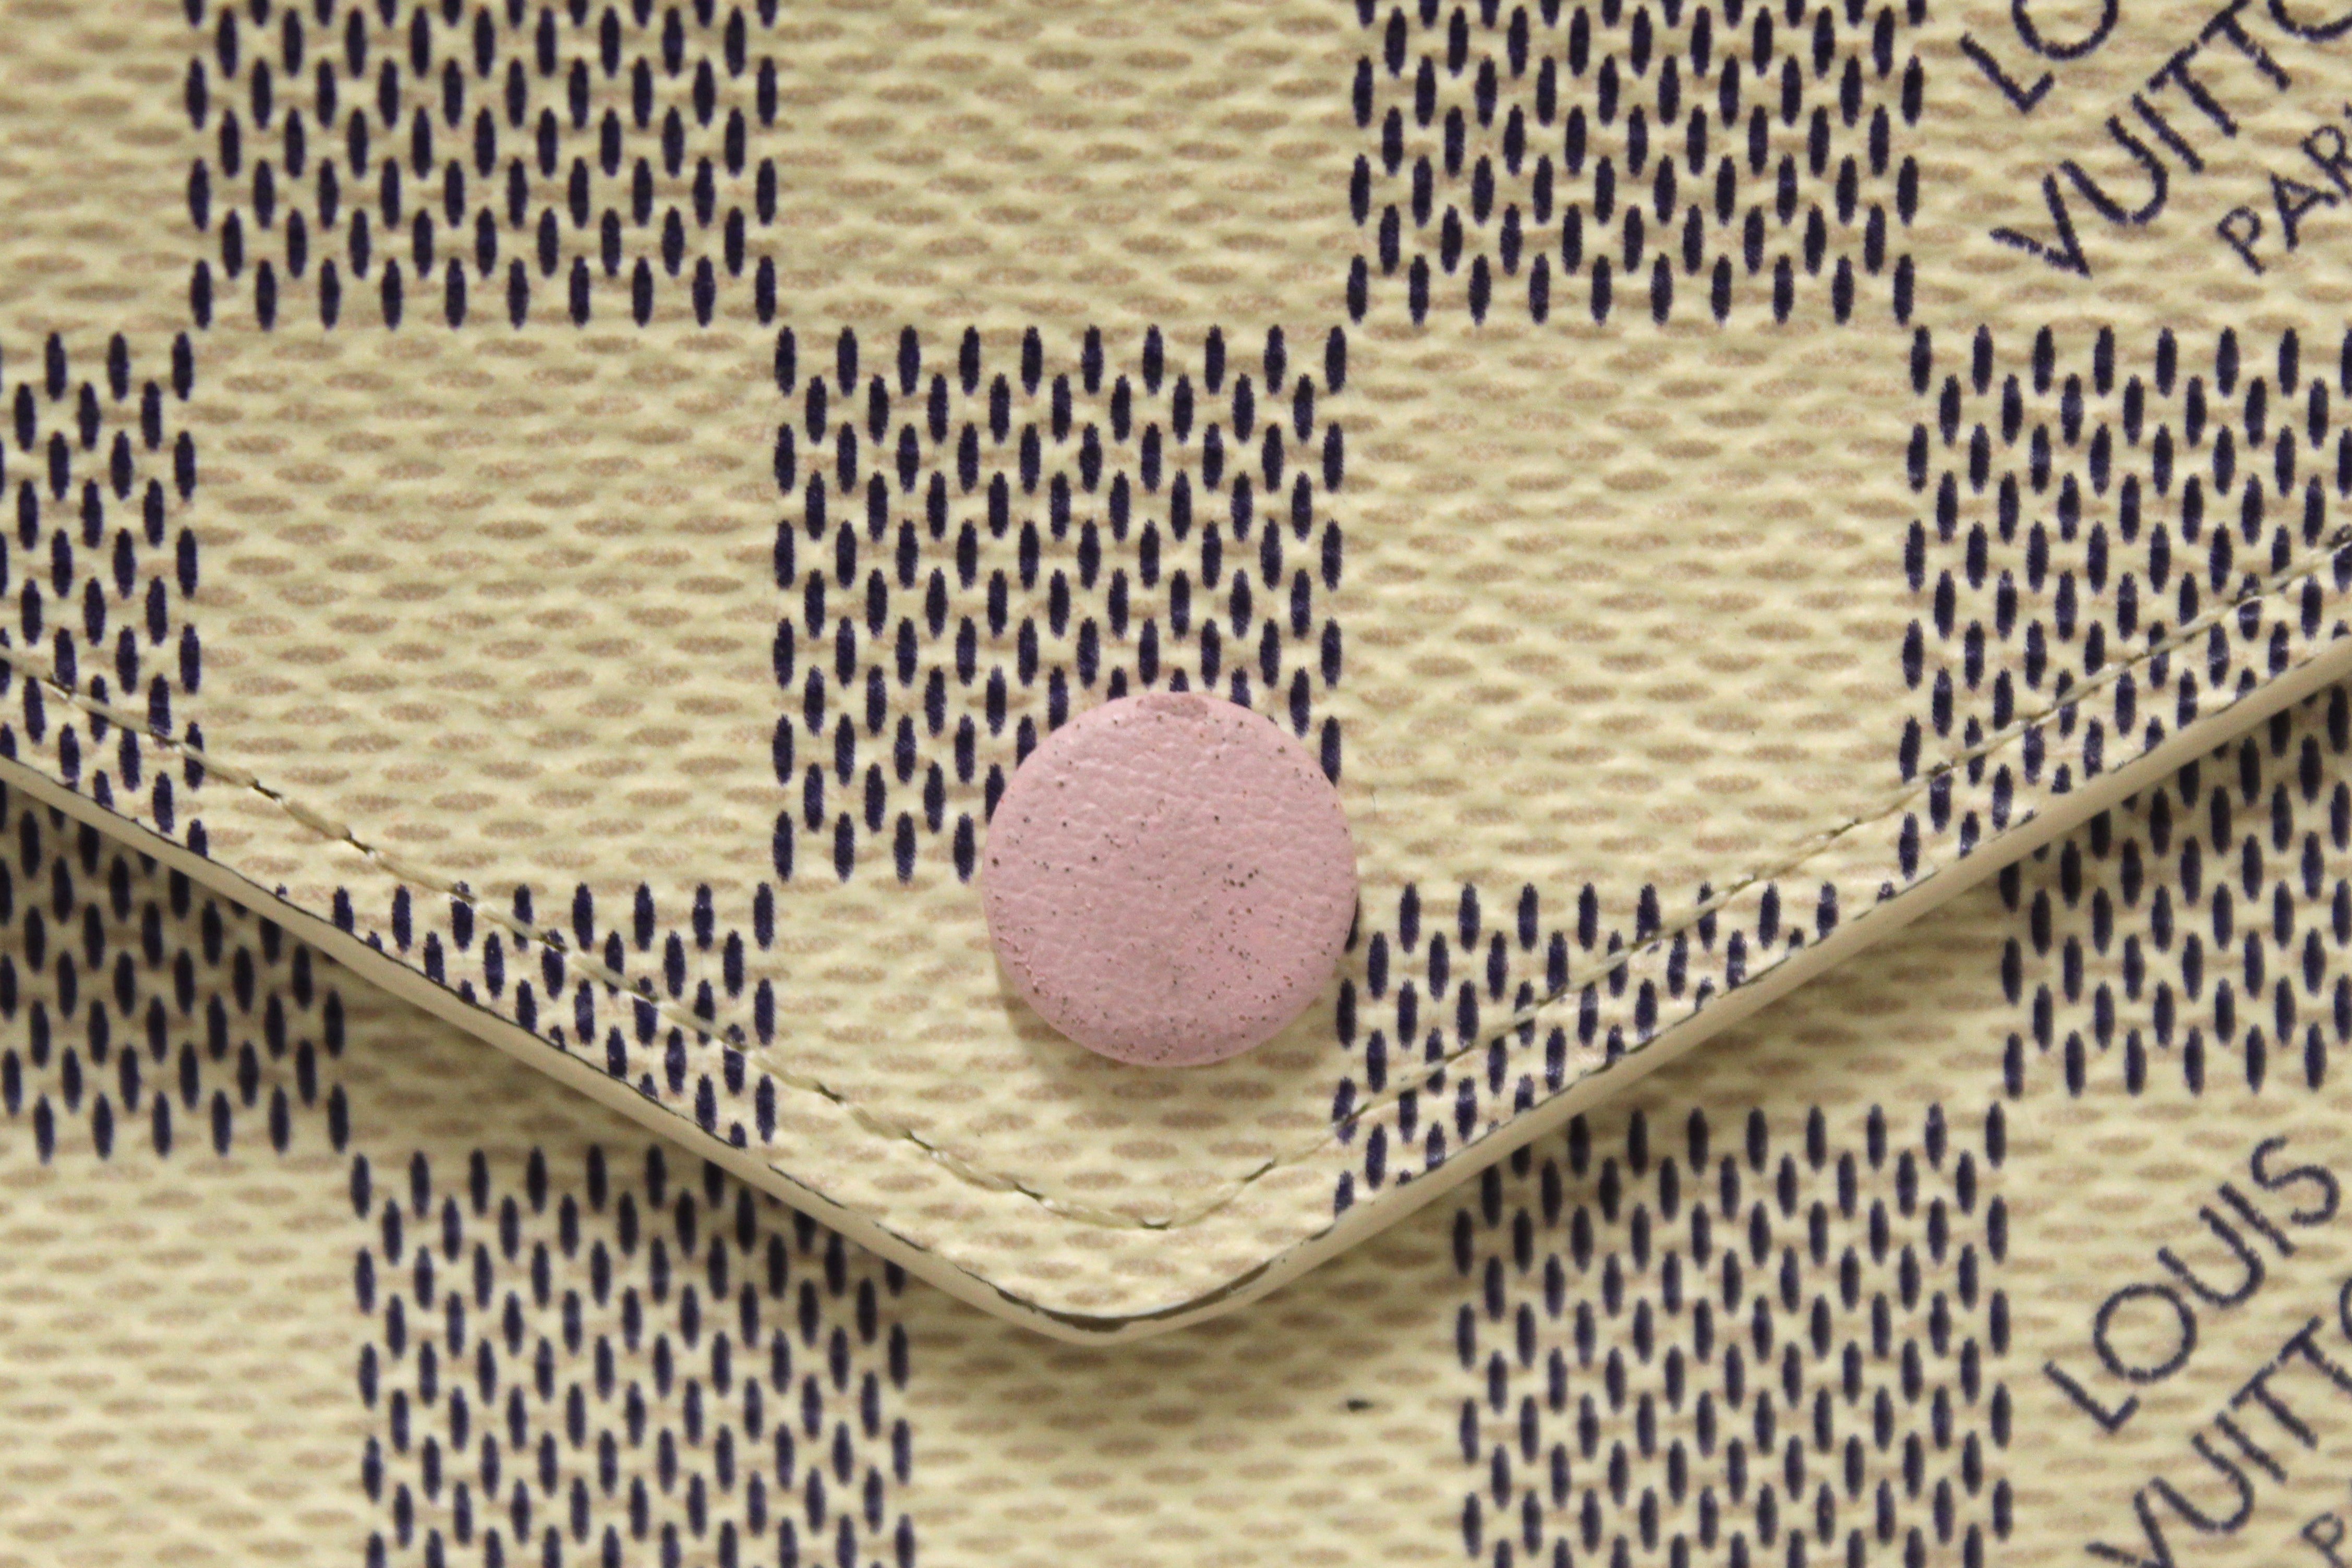 Authentic Louis Vuitton Damier Azur Rose Ballerine Pink Victorine Wallet